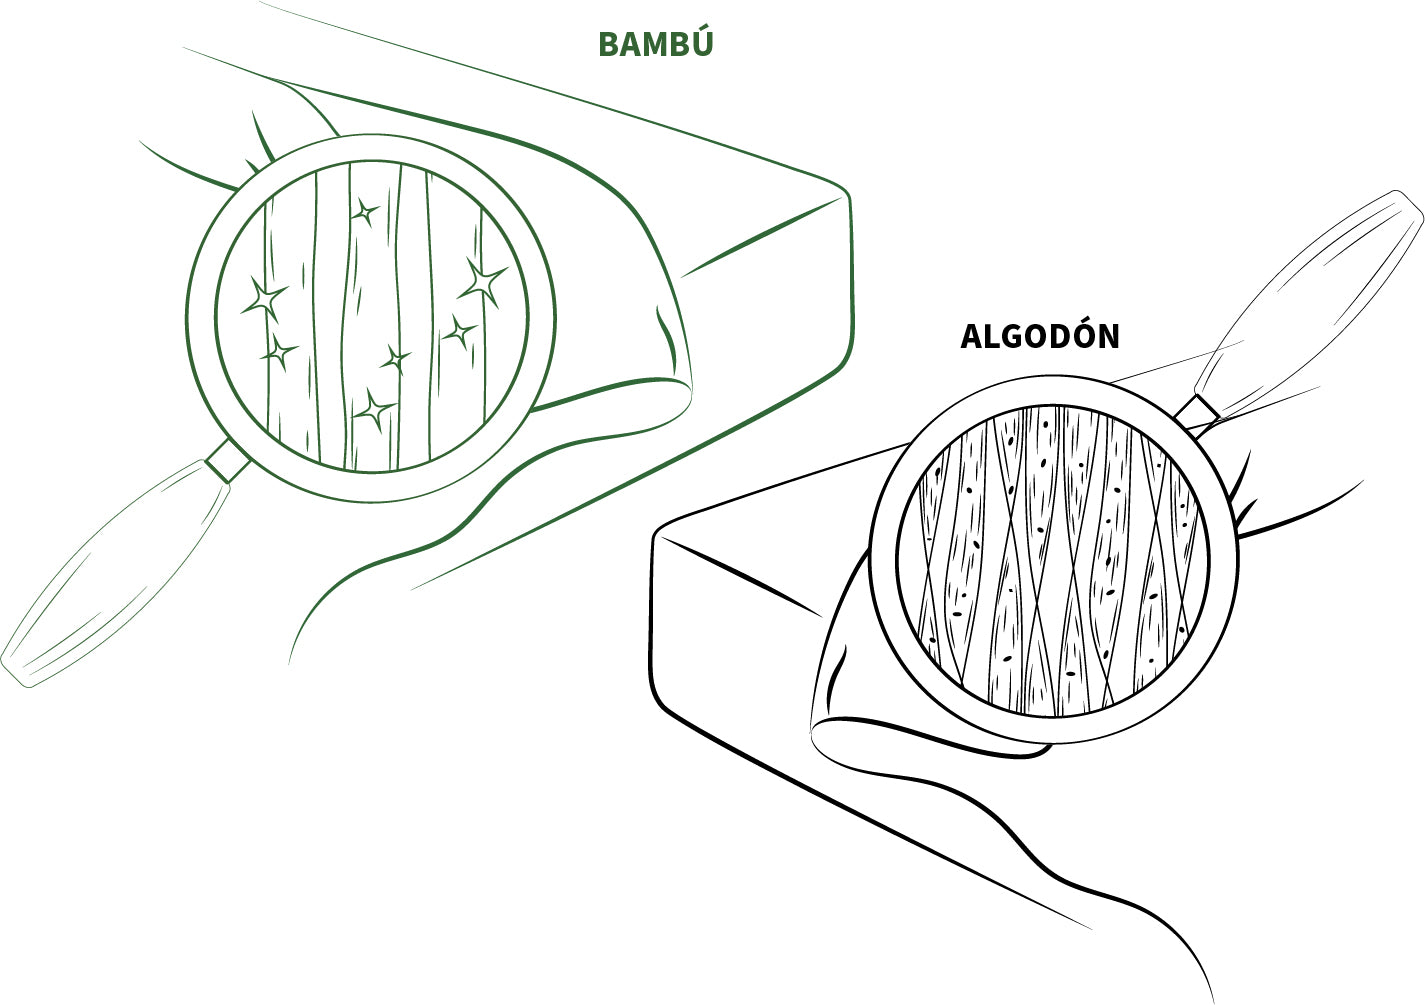 bambaw cubiertas de edredon de bambu algodon comparacion